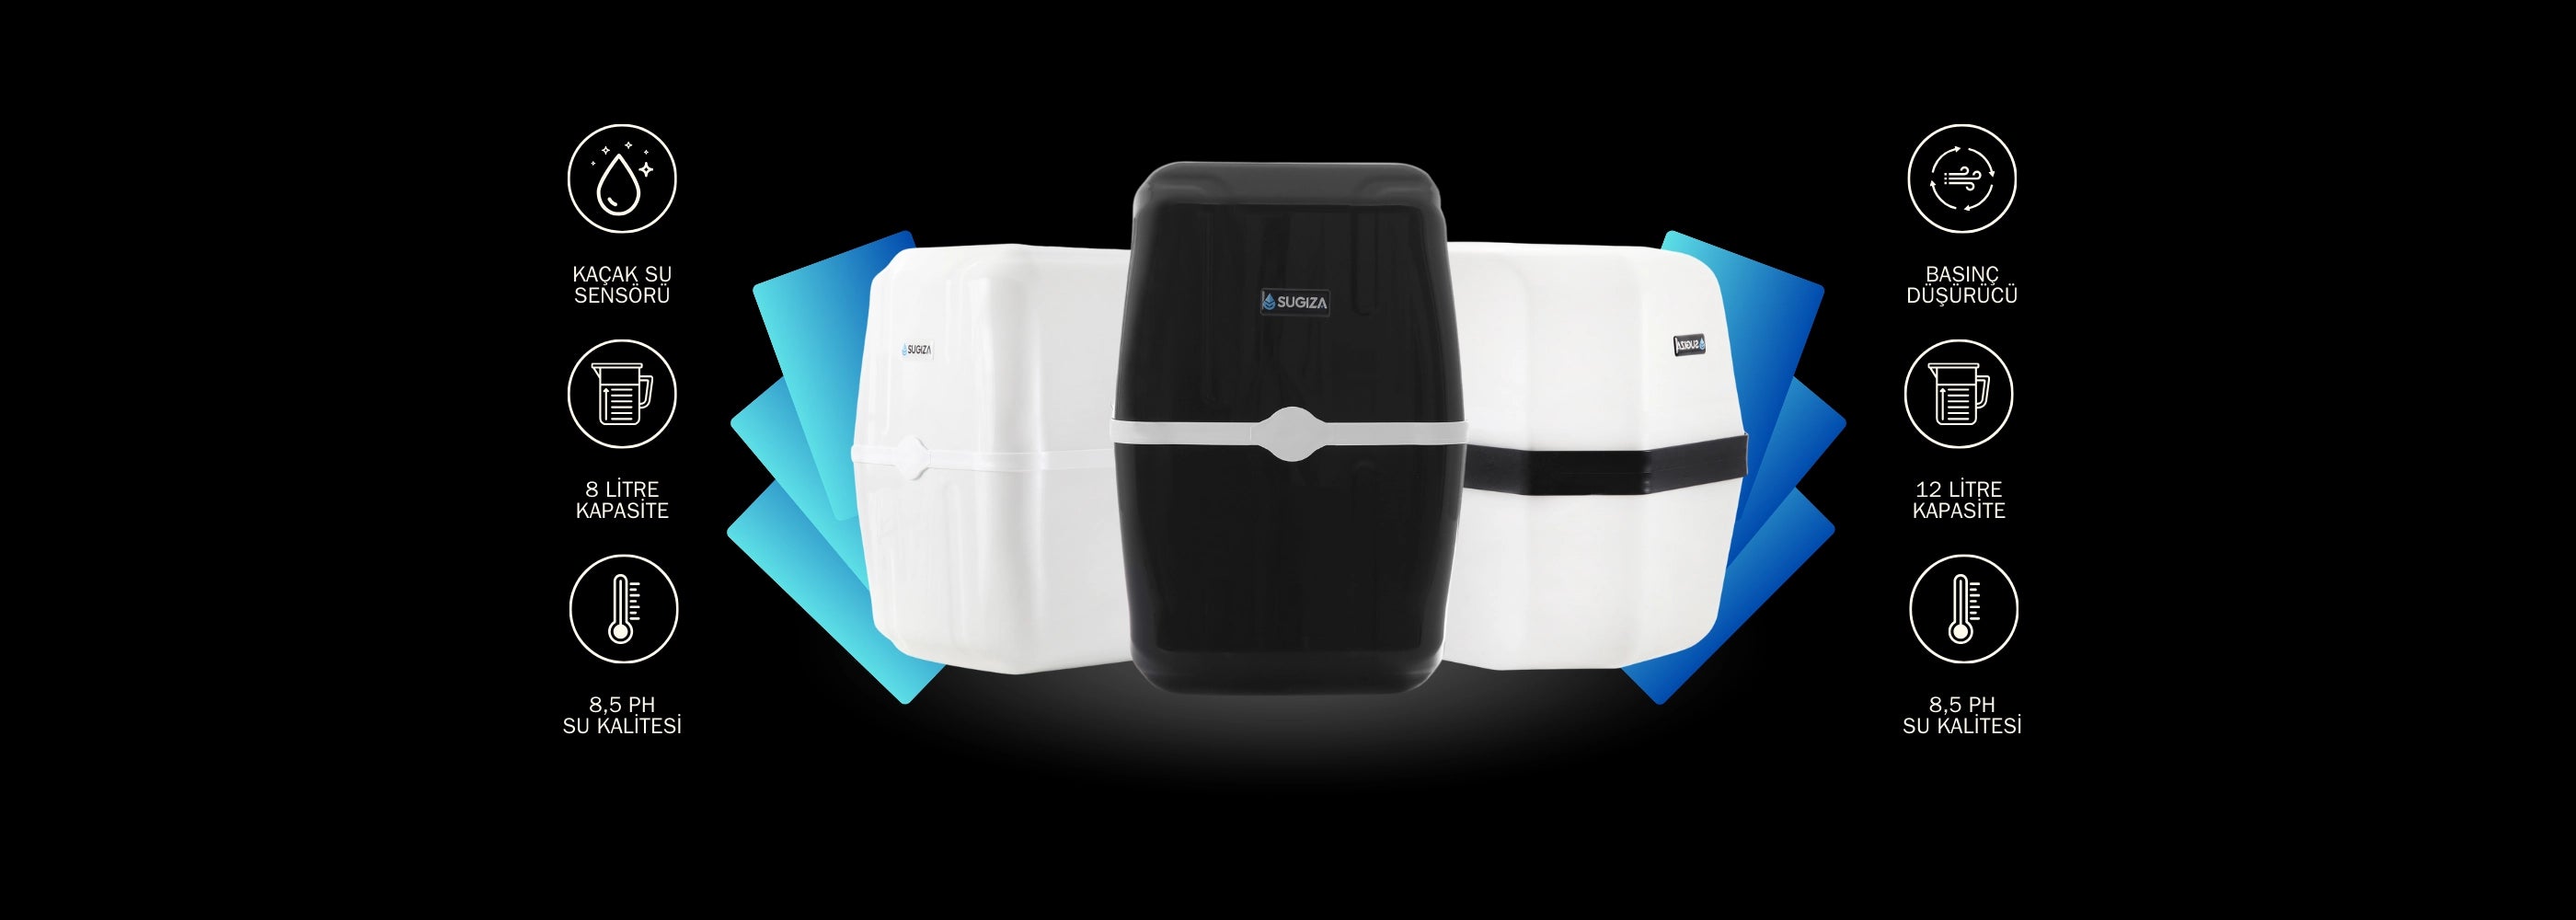 Sugiza Su Arıtma Cihaz Özellikleri, Kaçak Su Sensörü ve Basınç Düşürücü Hediyeli